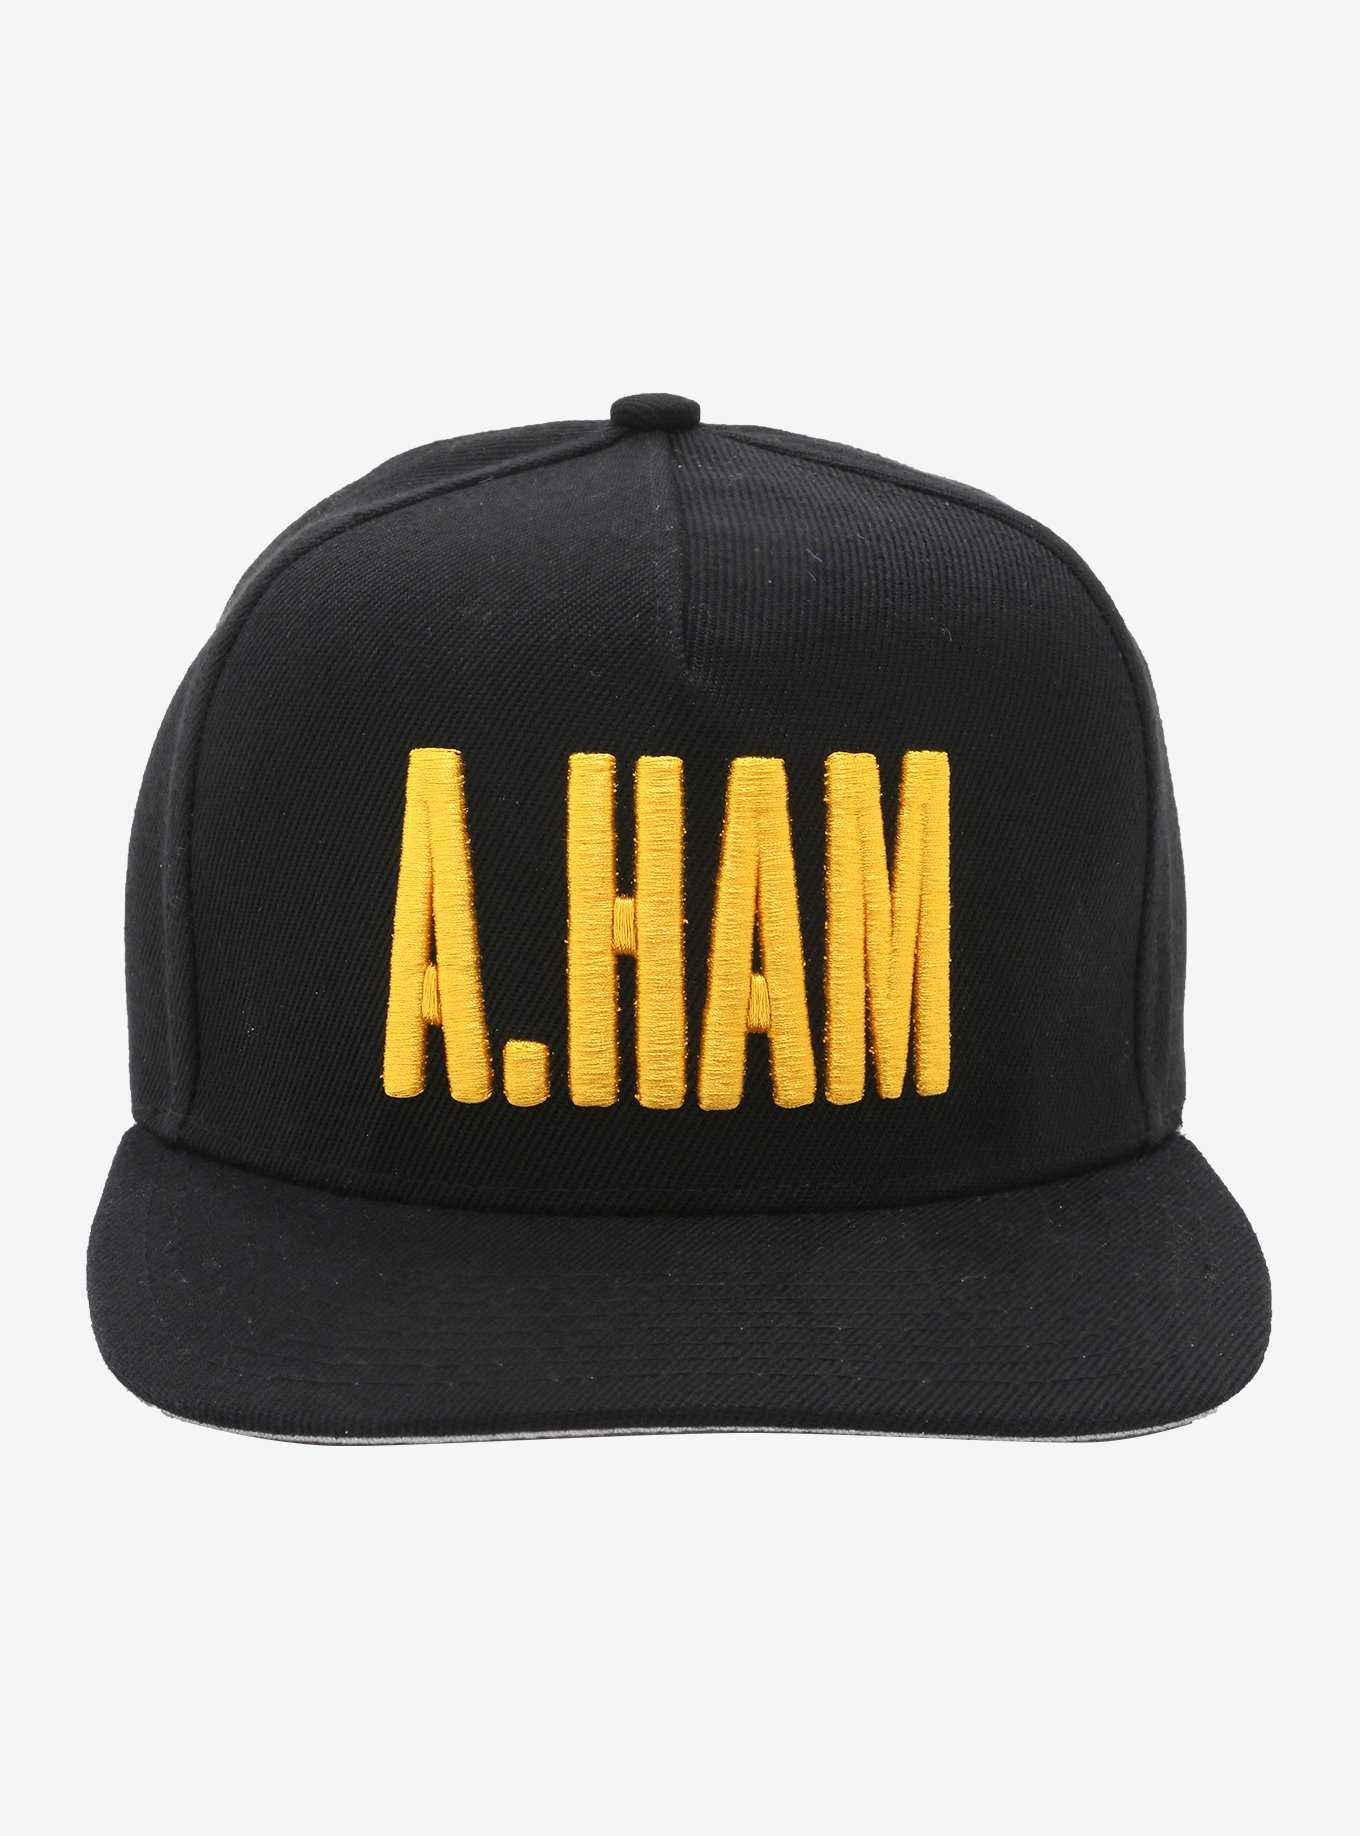 Hamilton A.Ham Snapback Hat, , hi-res